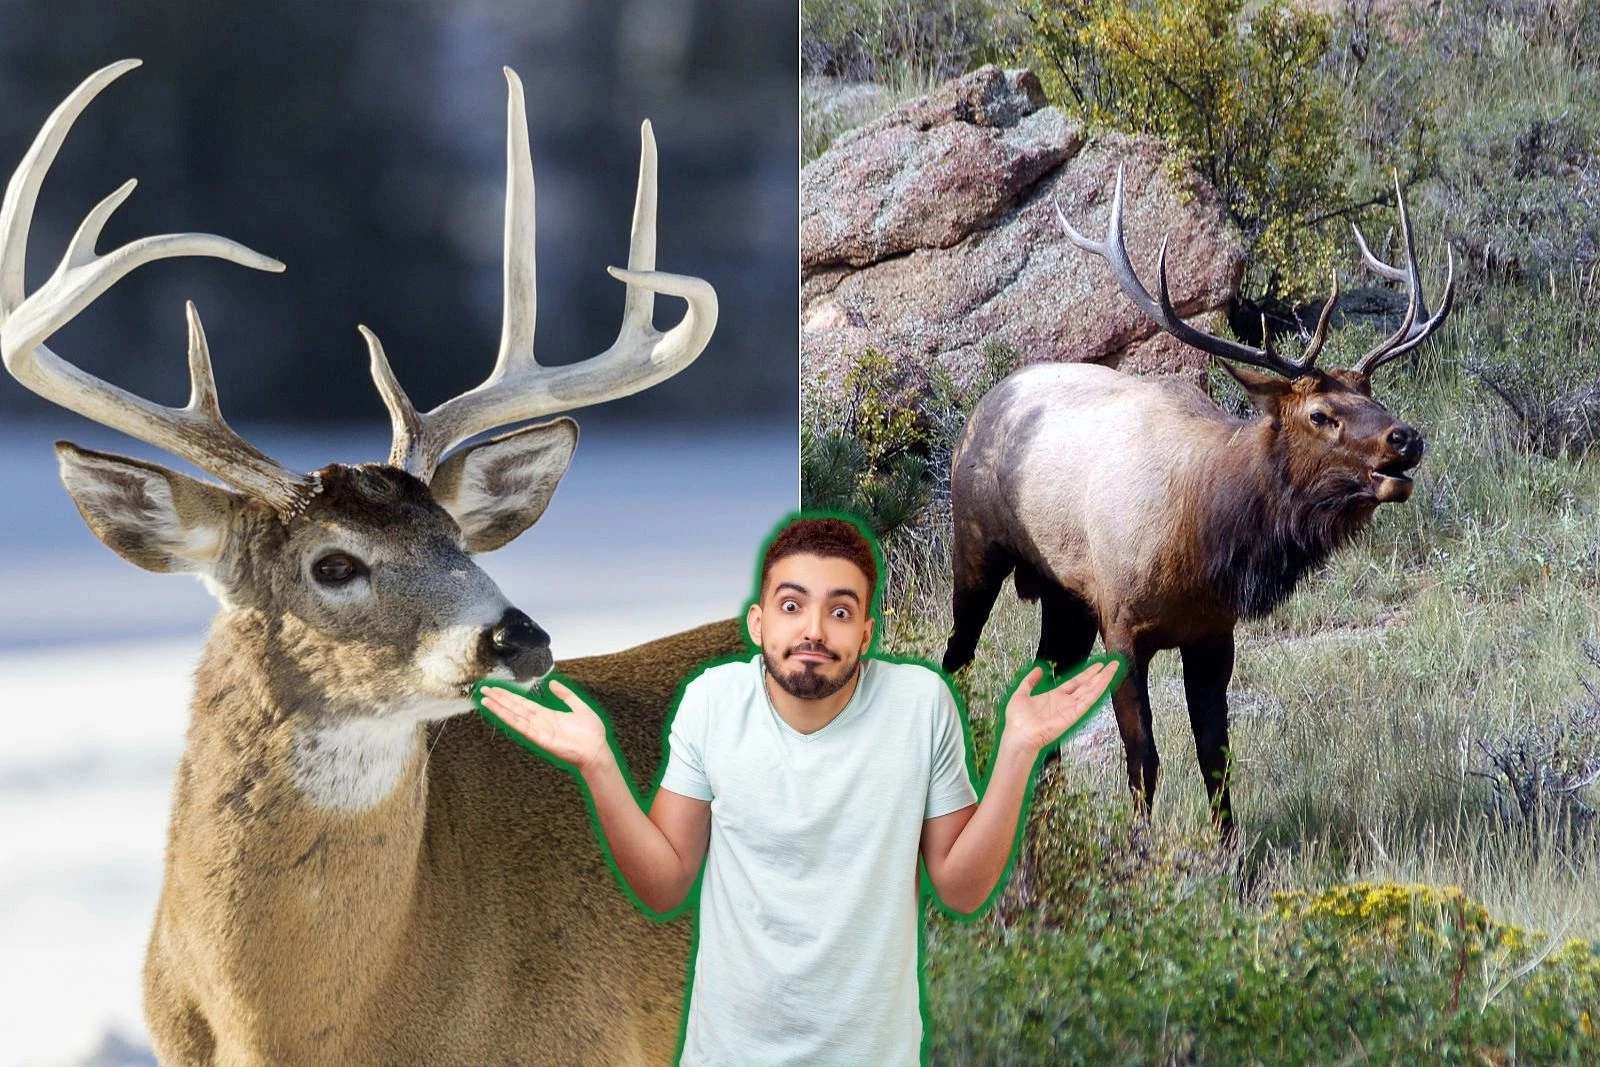 mule deer vs elk